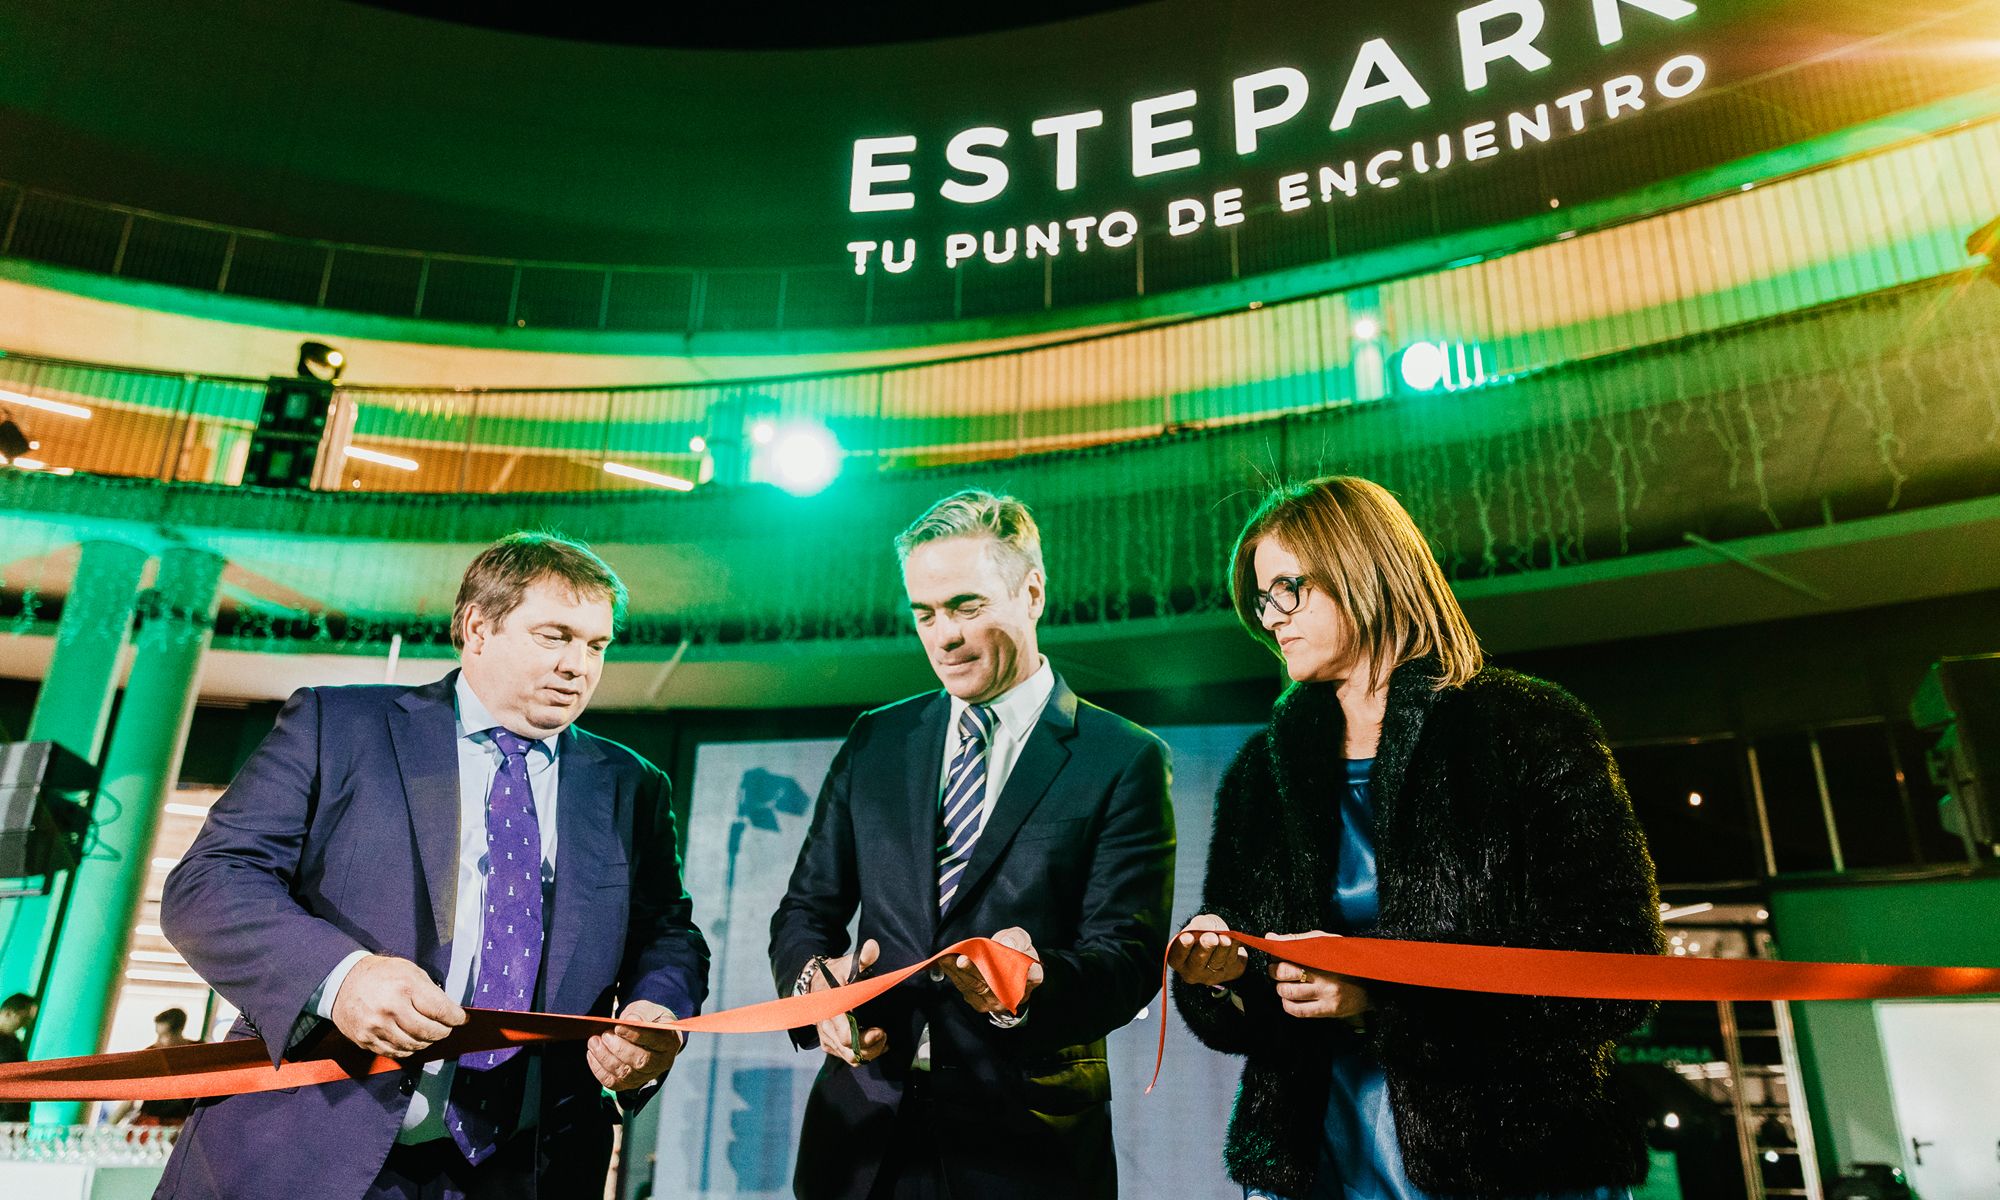 Imagen de la inauguración del Centro comercial Estepark